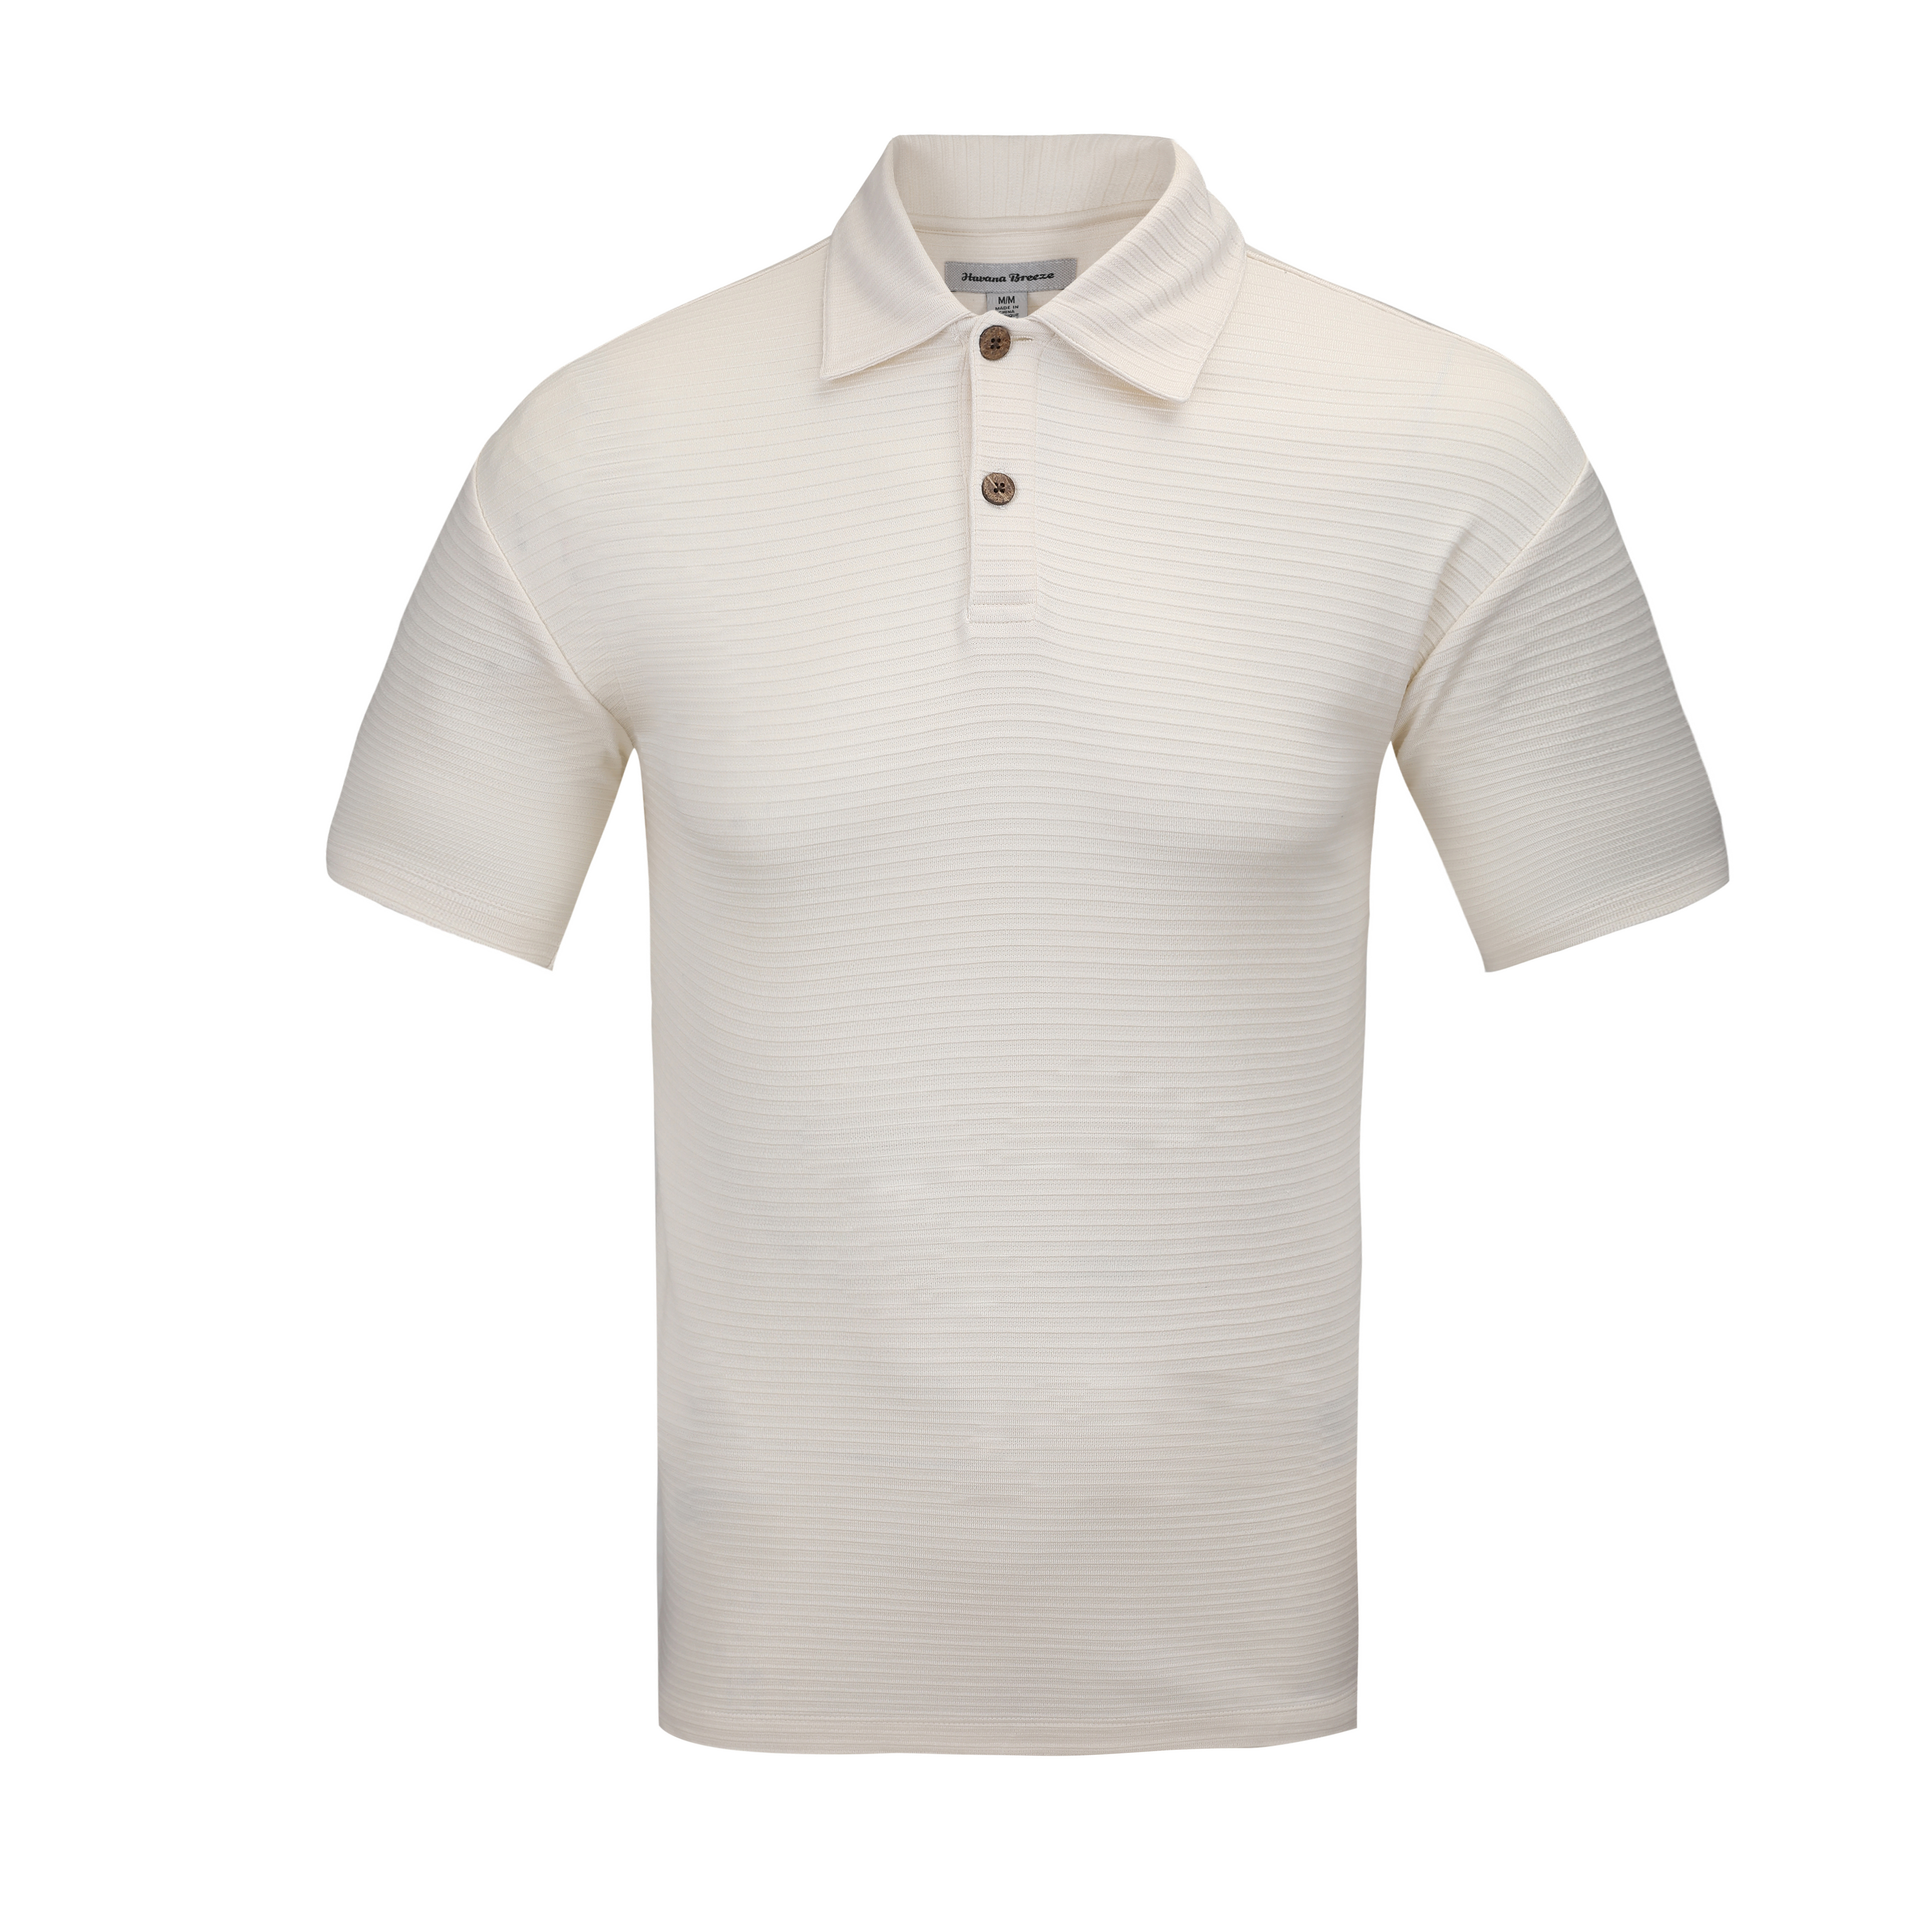 Dacheng Kayo Wholesale Solid White Men's Polo T-Shirt JZ1A8778